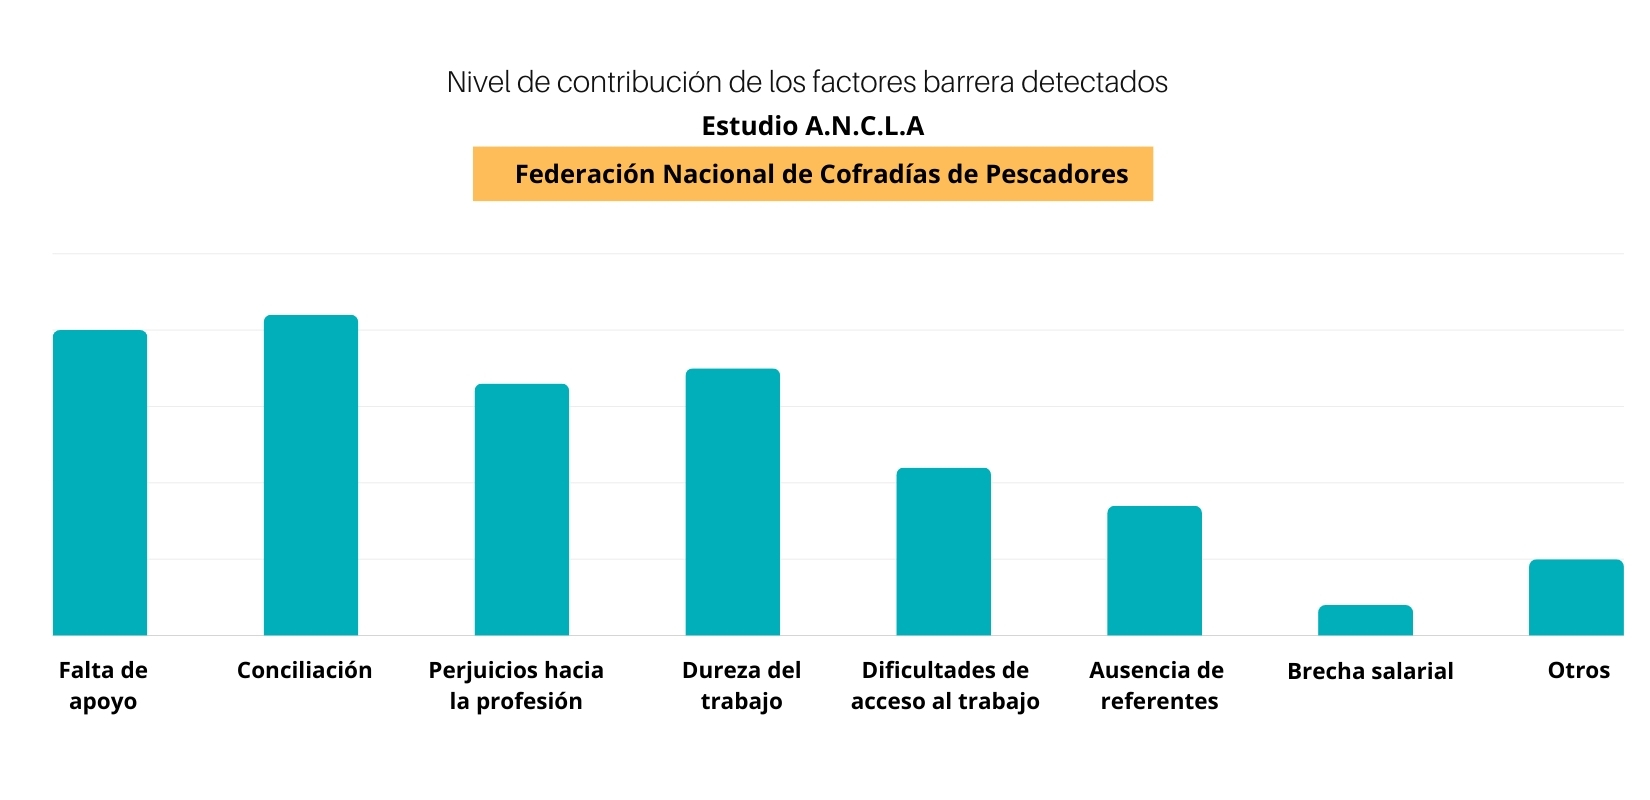 Gráfico obtenido del estudio ANCLA de la Federación Nacional de Cofradías de pescadores. 